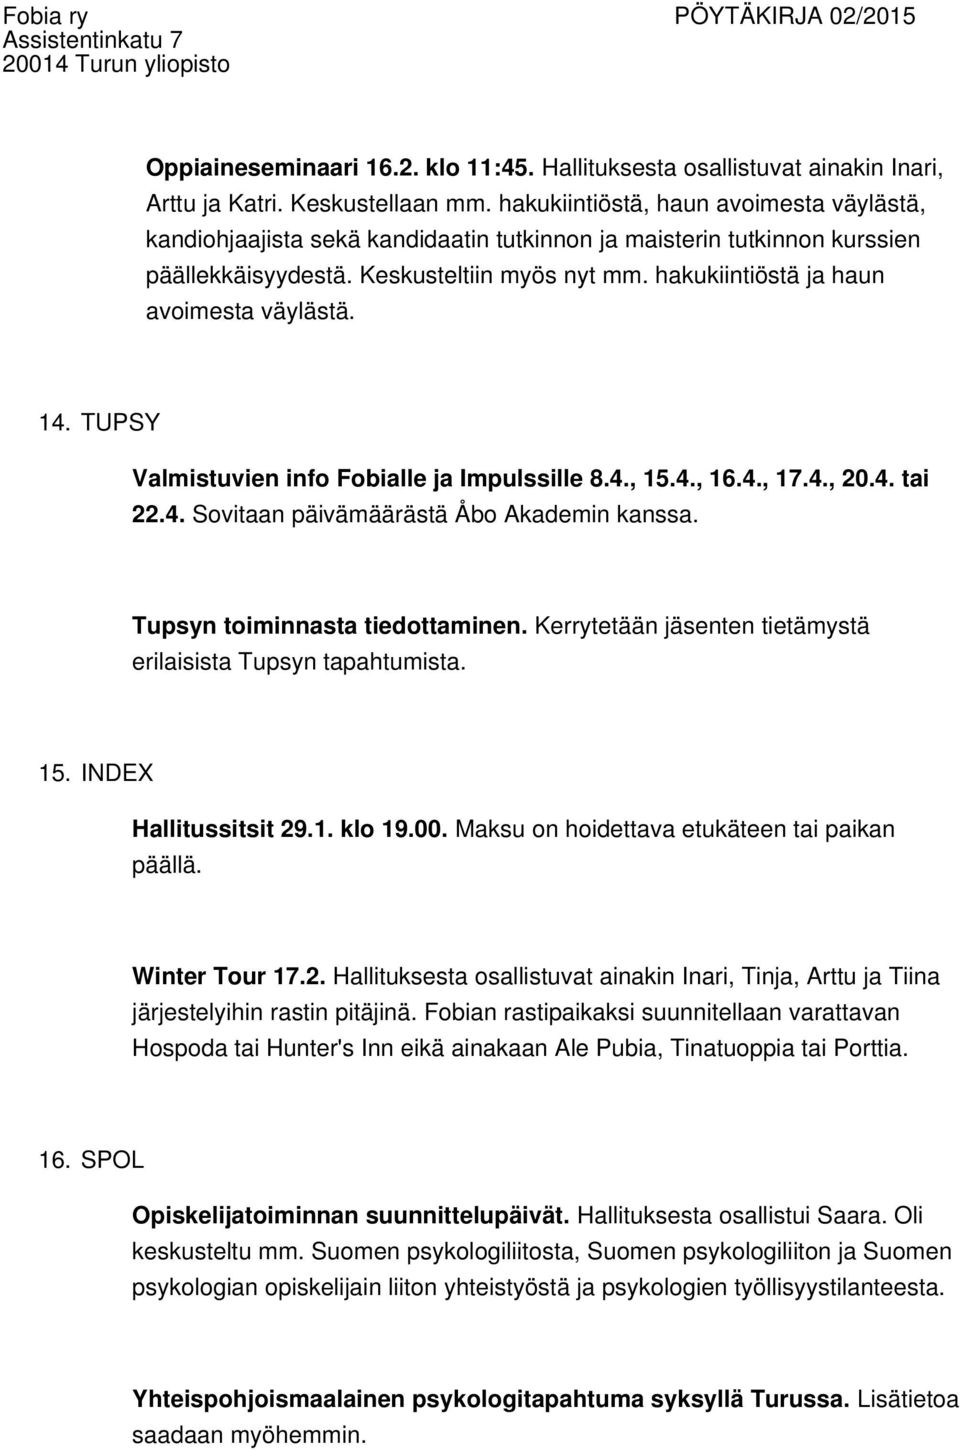 hakukiintiöstä ja haun avoimesta väylästä. 14. TUPSY Valmistuvien info Fobialle ja Impulssille 8.4., 15.4., 16.4., 17.4., 20.4. tai 22.4. Sovitaan päivämäärästä Åbo Akademin kanssa.